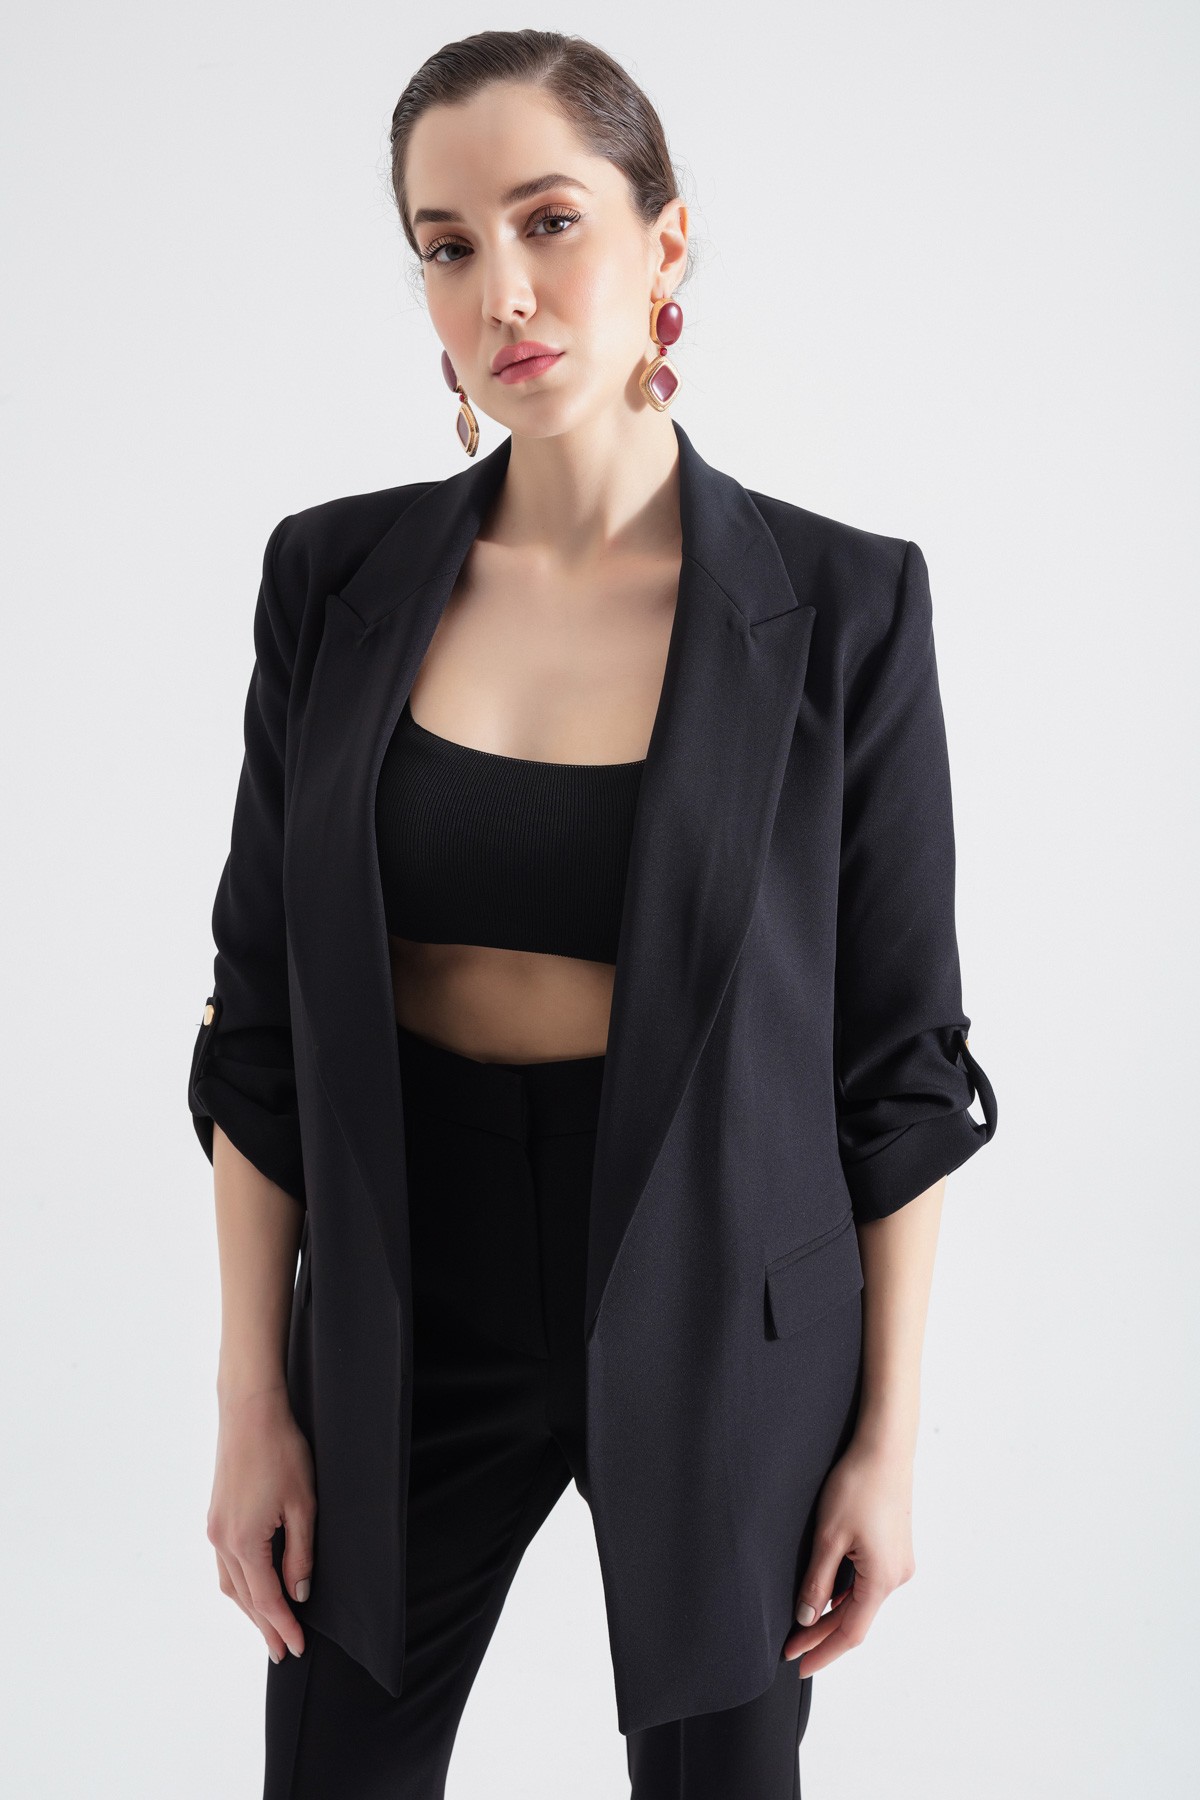 Kadın Kolları Katlamalı Blazer Ceket - Siyah